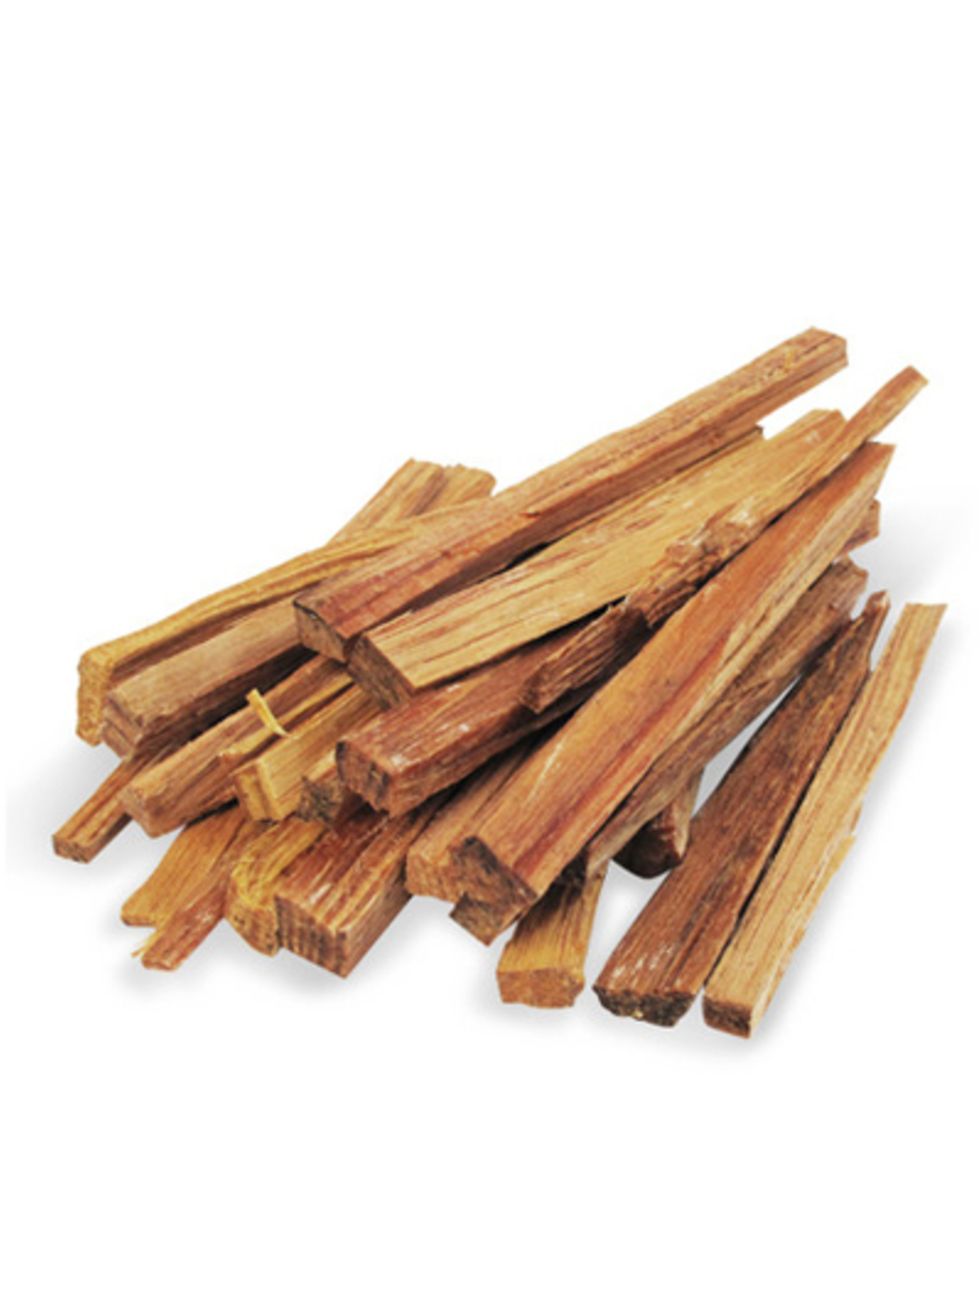 Wood, Brown, Hardwood, Tan, Beige, Ingredient, Lumber, 